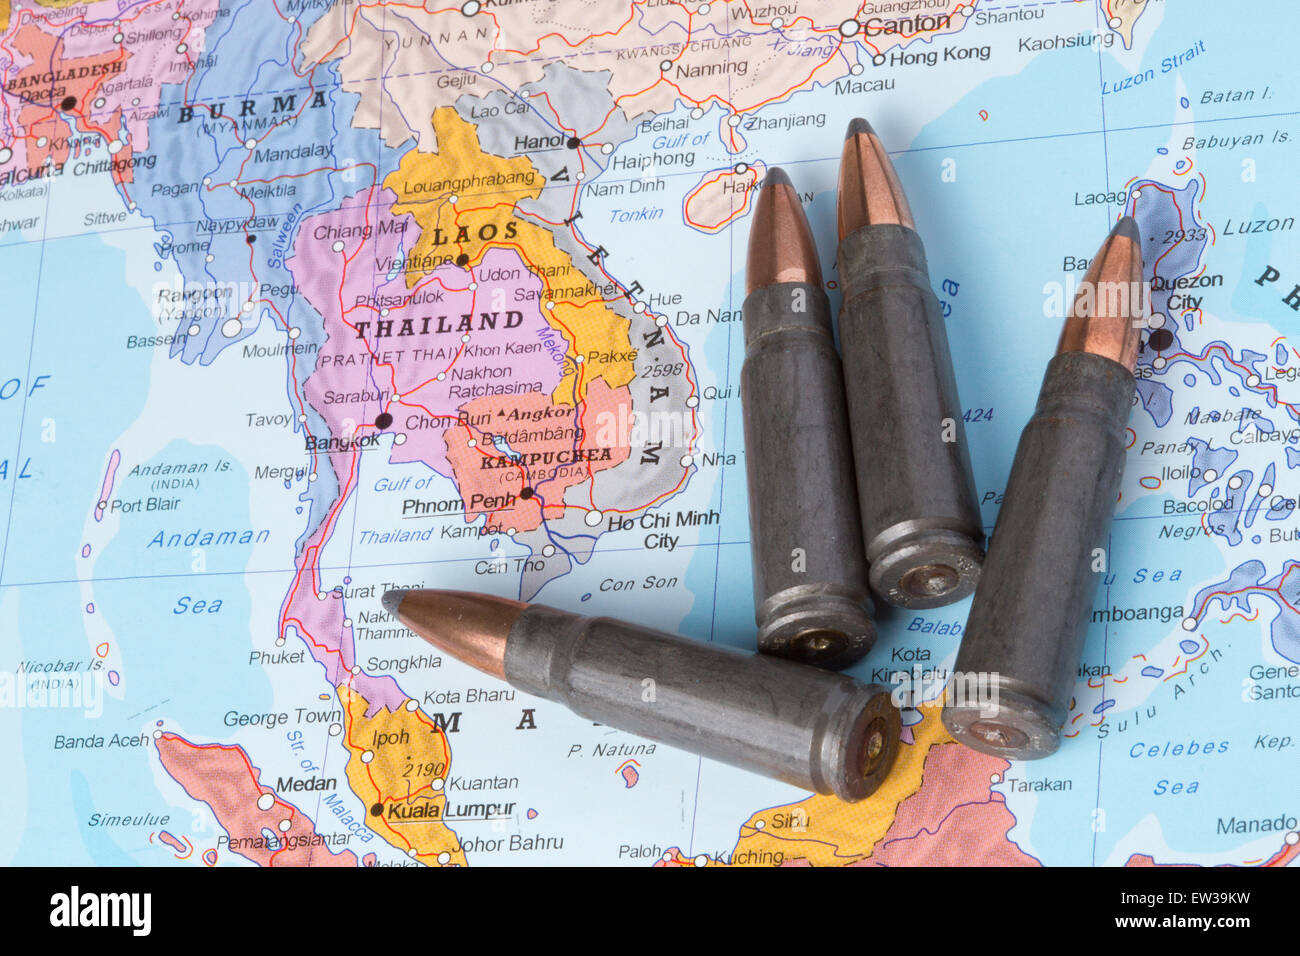 Quattro punti sulla mappa geografica della Thailandia e Laos e Vietnam. Immagine concettuale per la guerra, conflitti e violenza. Foto Stock